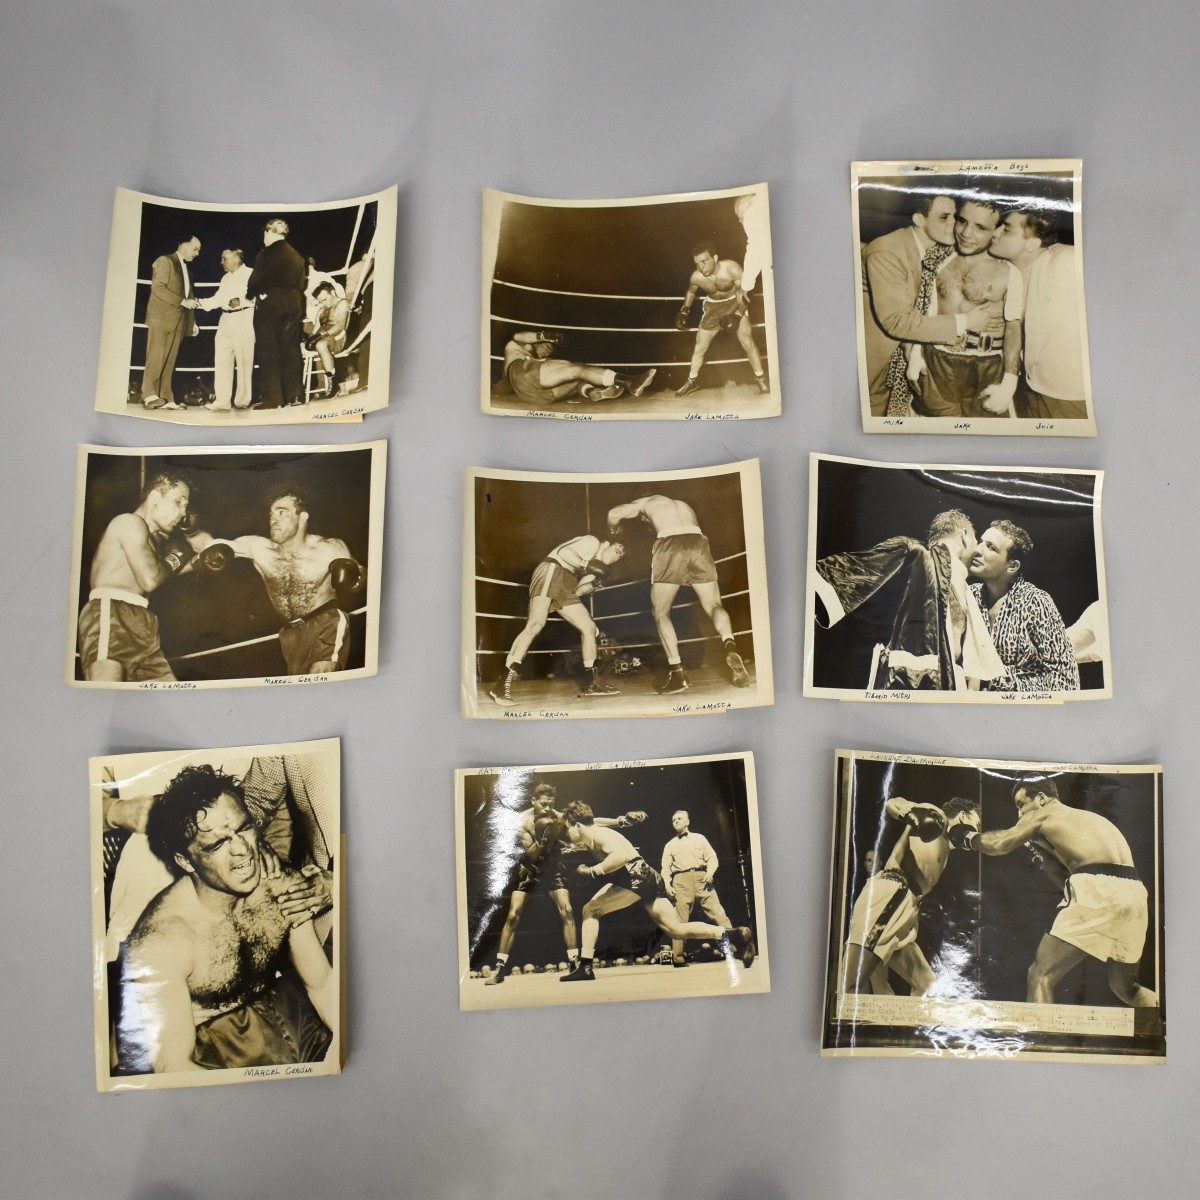 Sugar Ray Robinson Boxing Photograph Memorabilia